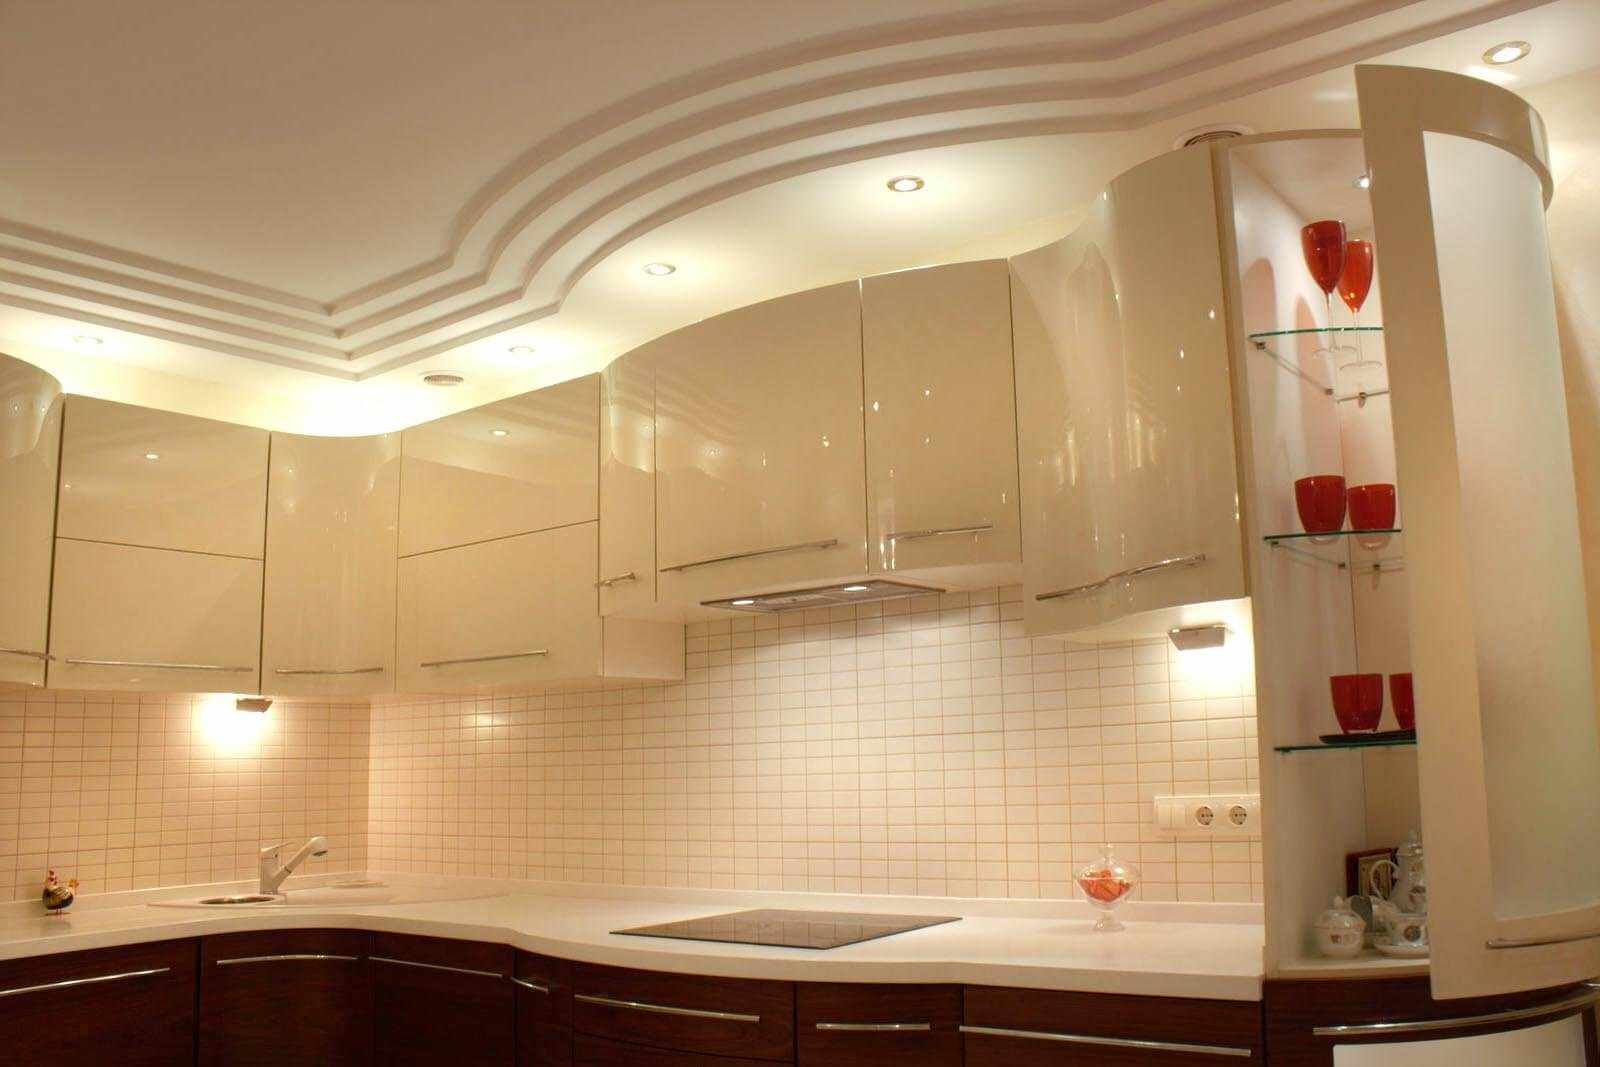 Un esempio di un design leggero del soffitto della cucina